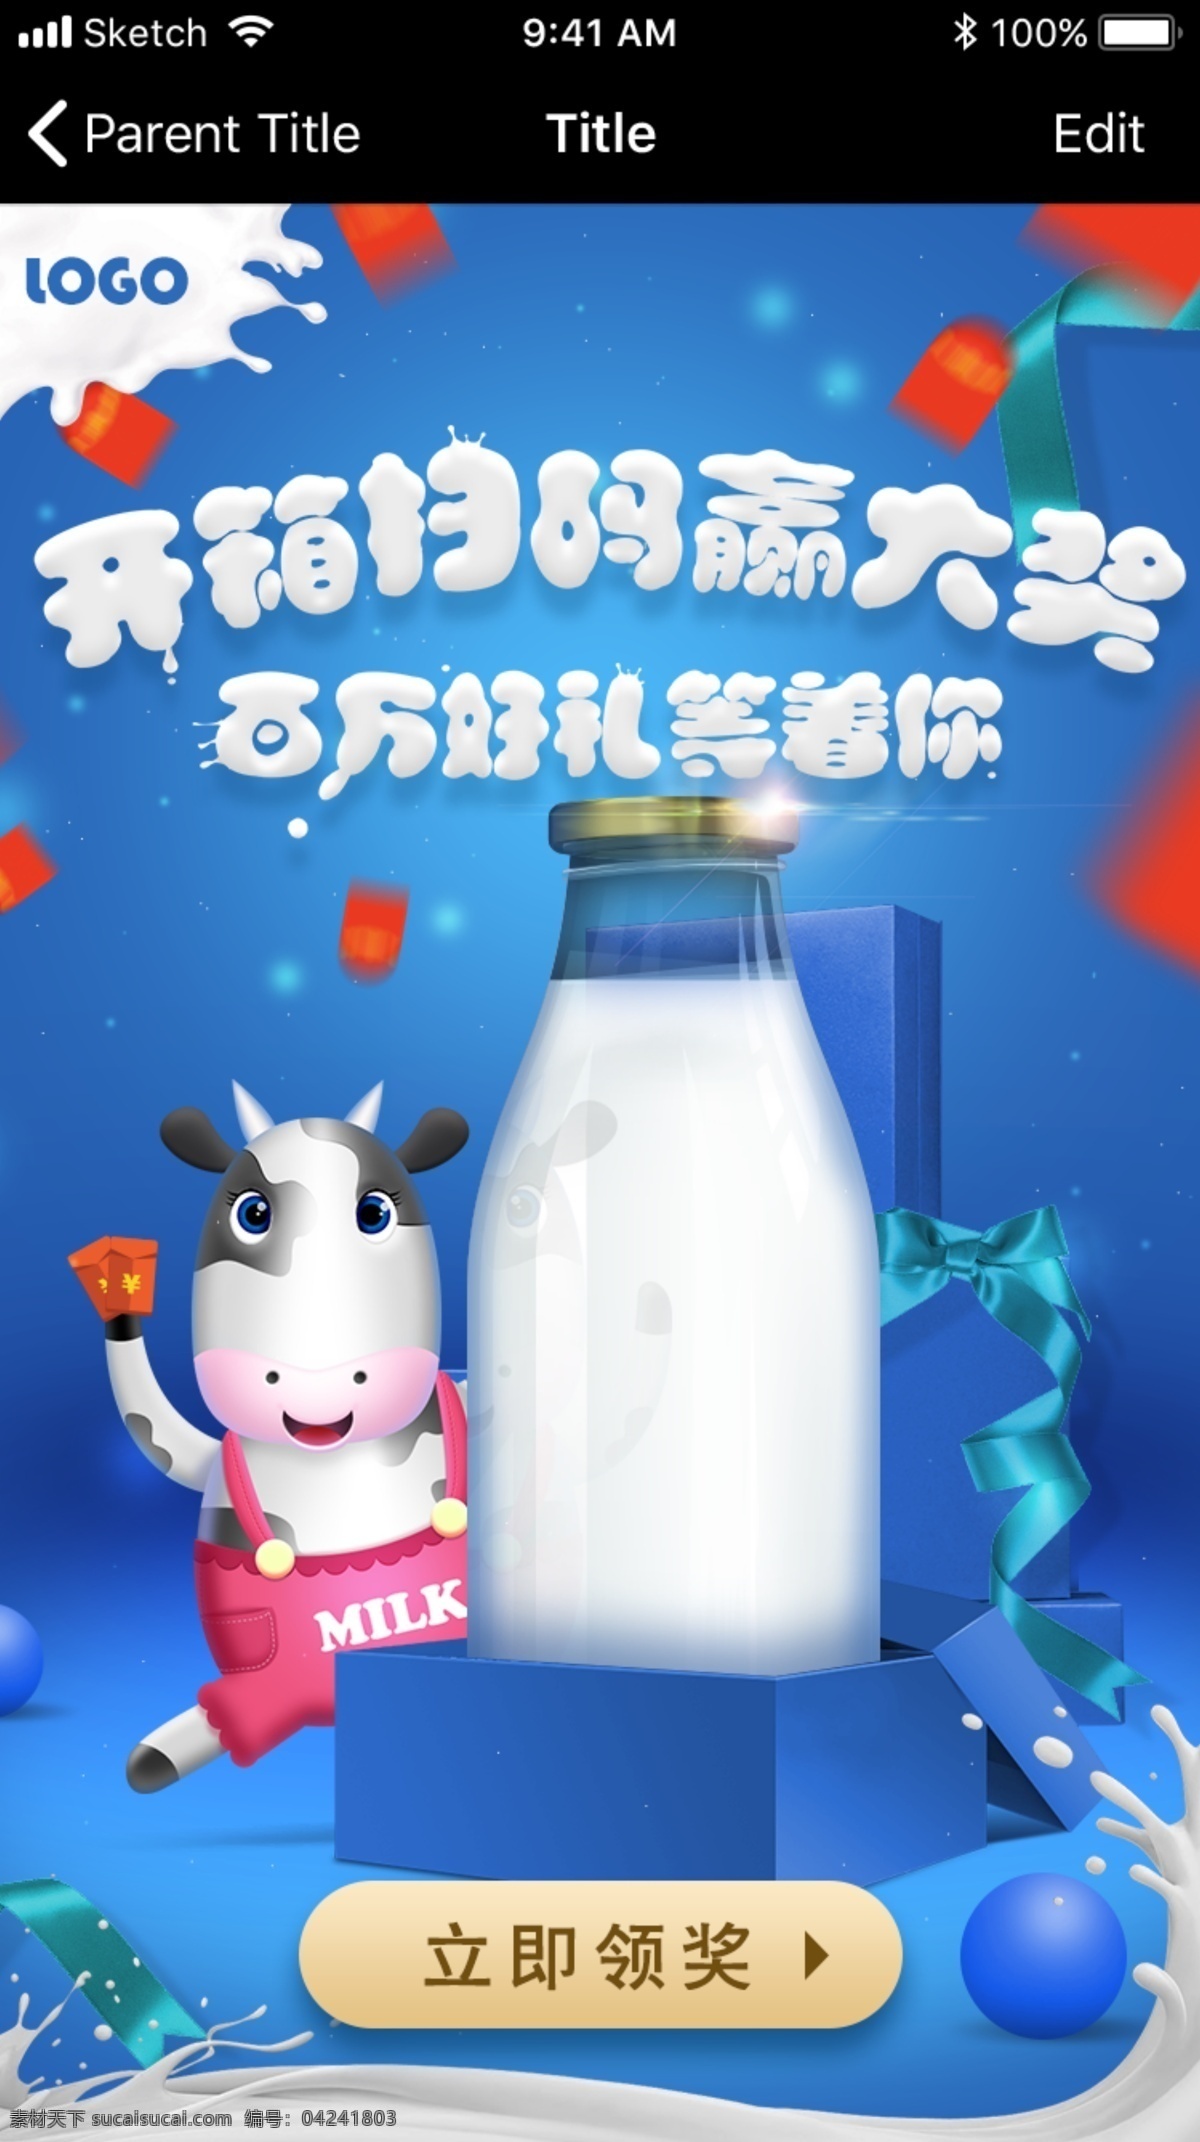 乳业 活动 h5 界面设计 卡通 抽奖 微信 模板 奶牛 牛奶